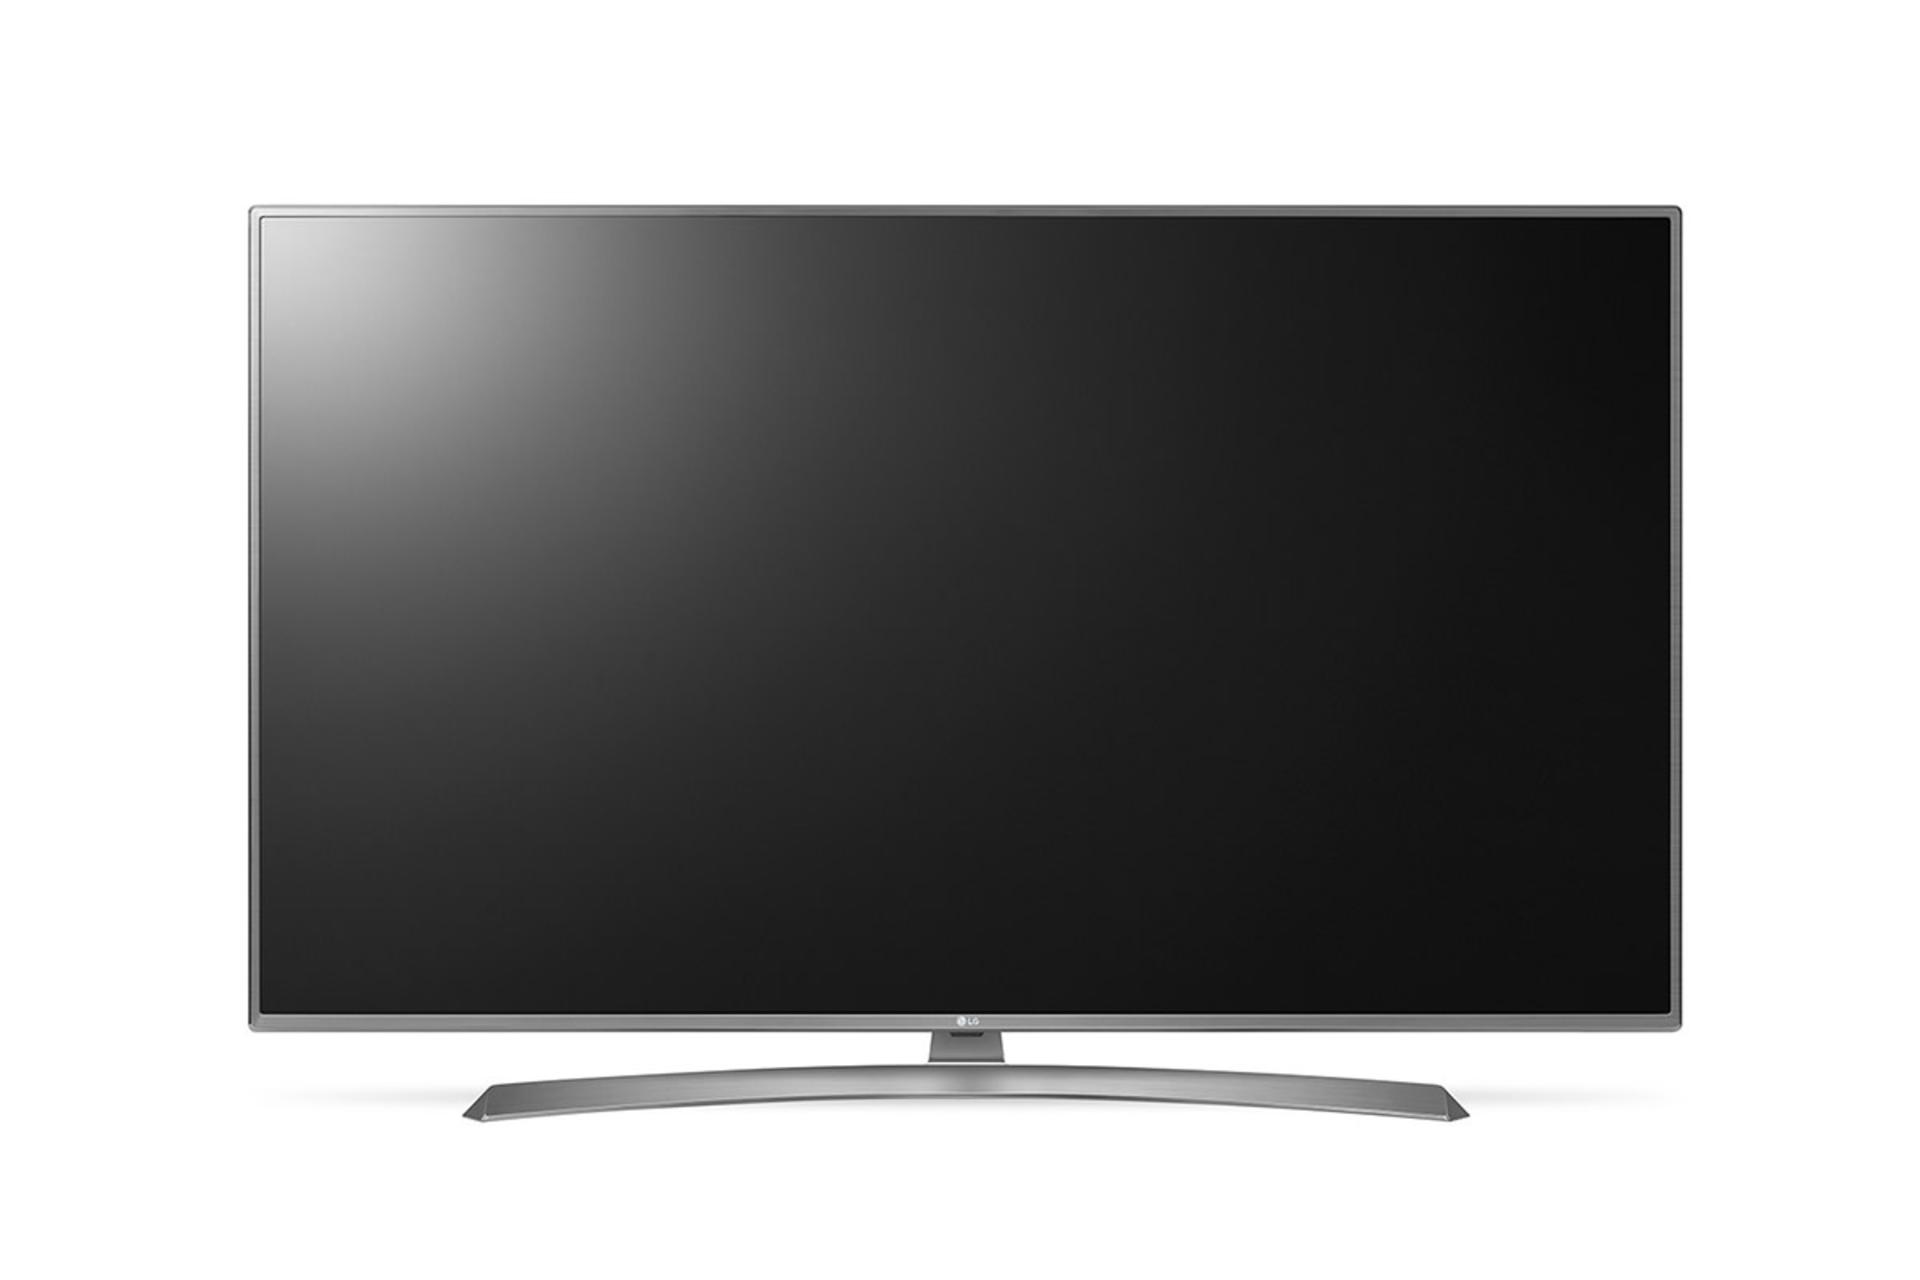 نمای جلو تلویزیون ال جی UJ6900 مدل 55 اینچ با بدنه نقره ای و صفحه خاموش